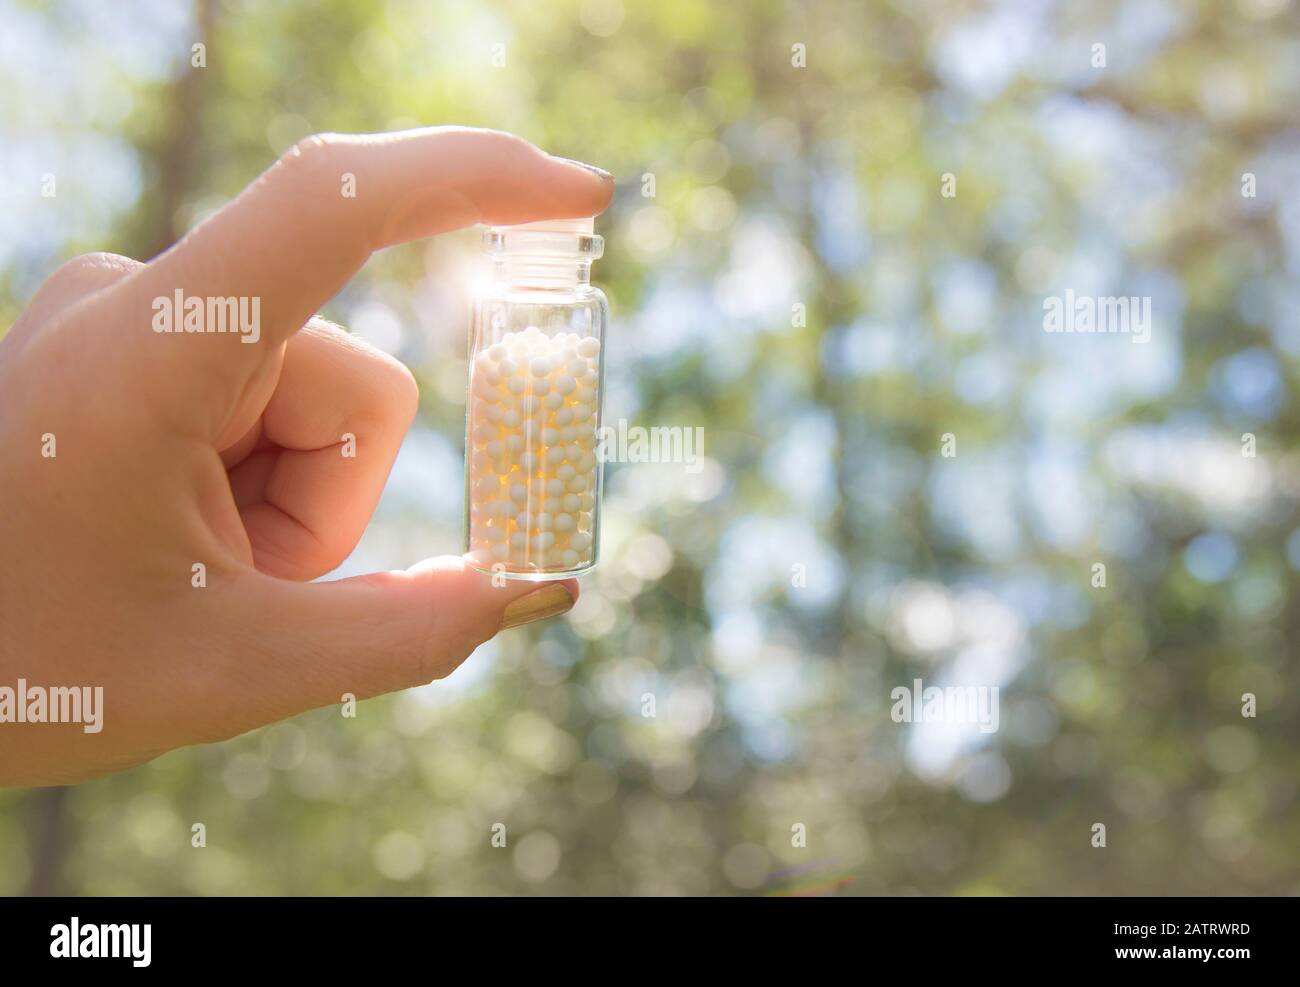 Selektiver Fokus auf die Hand der Person, die im Sommer einen Glasbecher voller kleiner weißer runder Homöopathiepillen vor dem Hintergrund der Natur des Bokehwaldes hält. Stockfoto